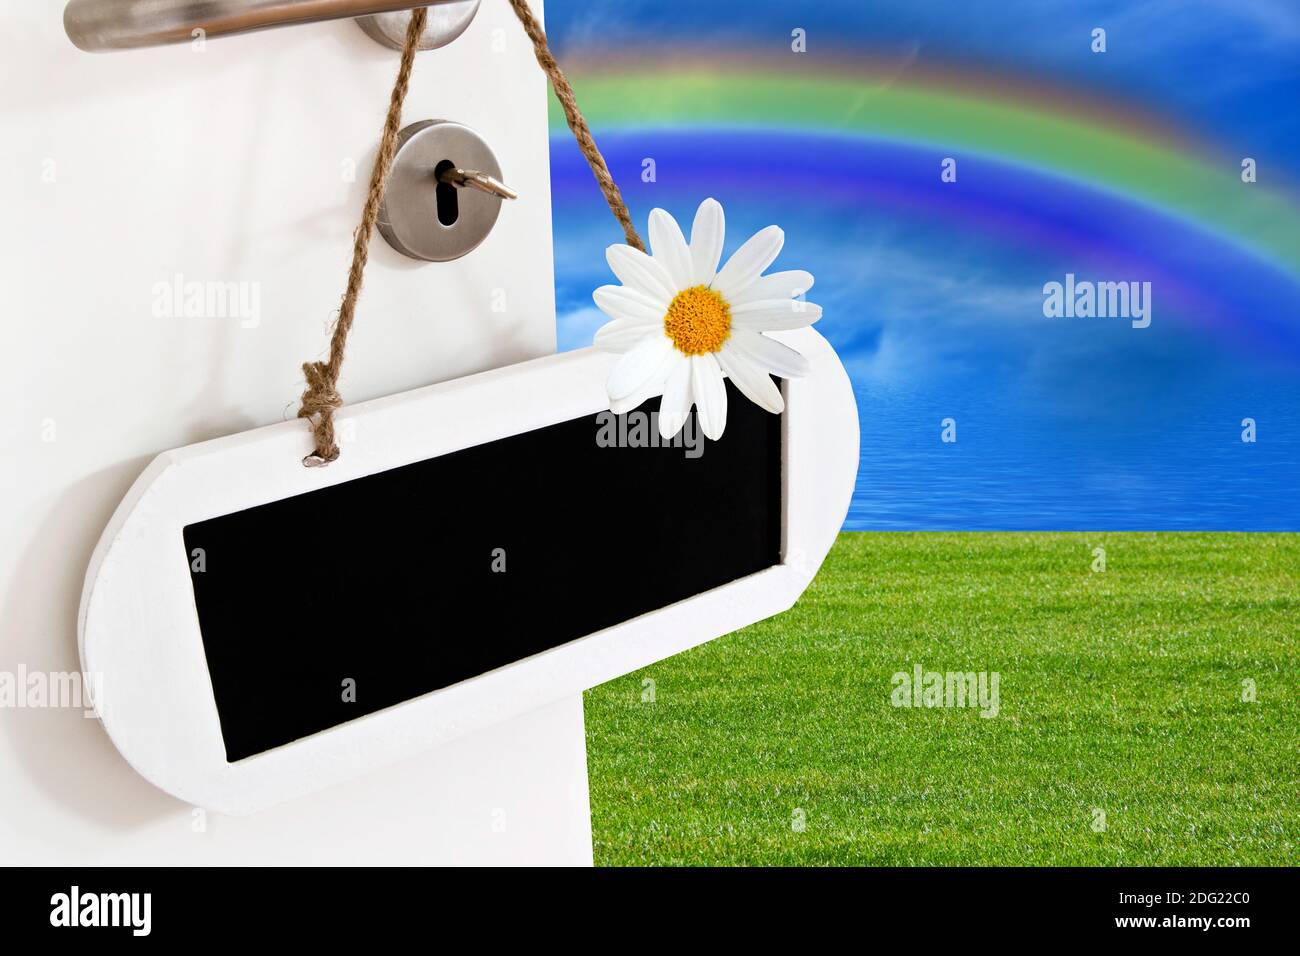 Offene Tür mit Kreidetafel , Himmel, Rasen und Regenbogen Stockfoto